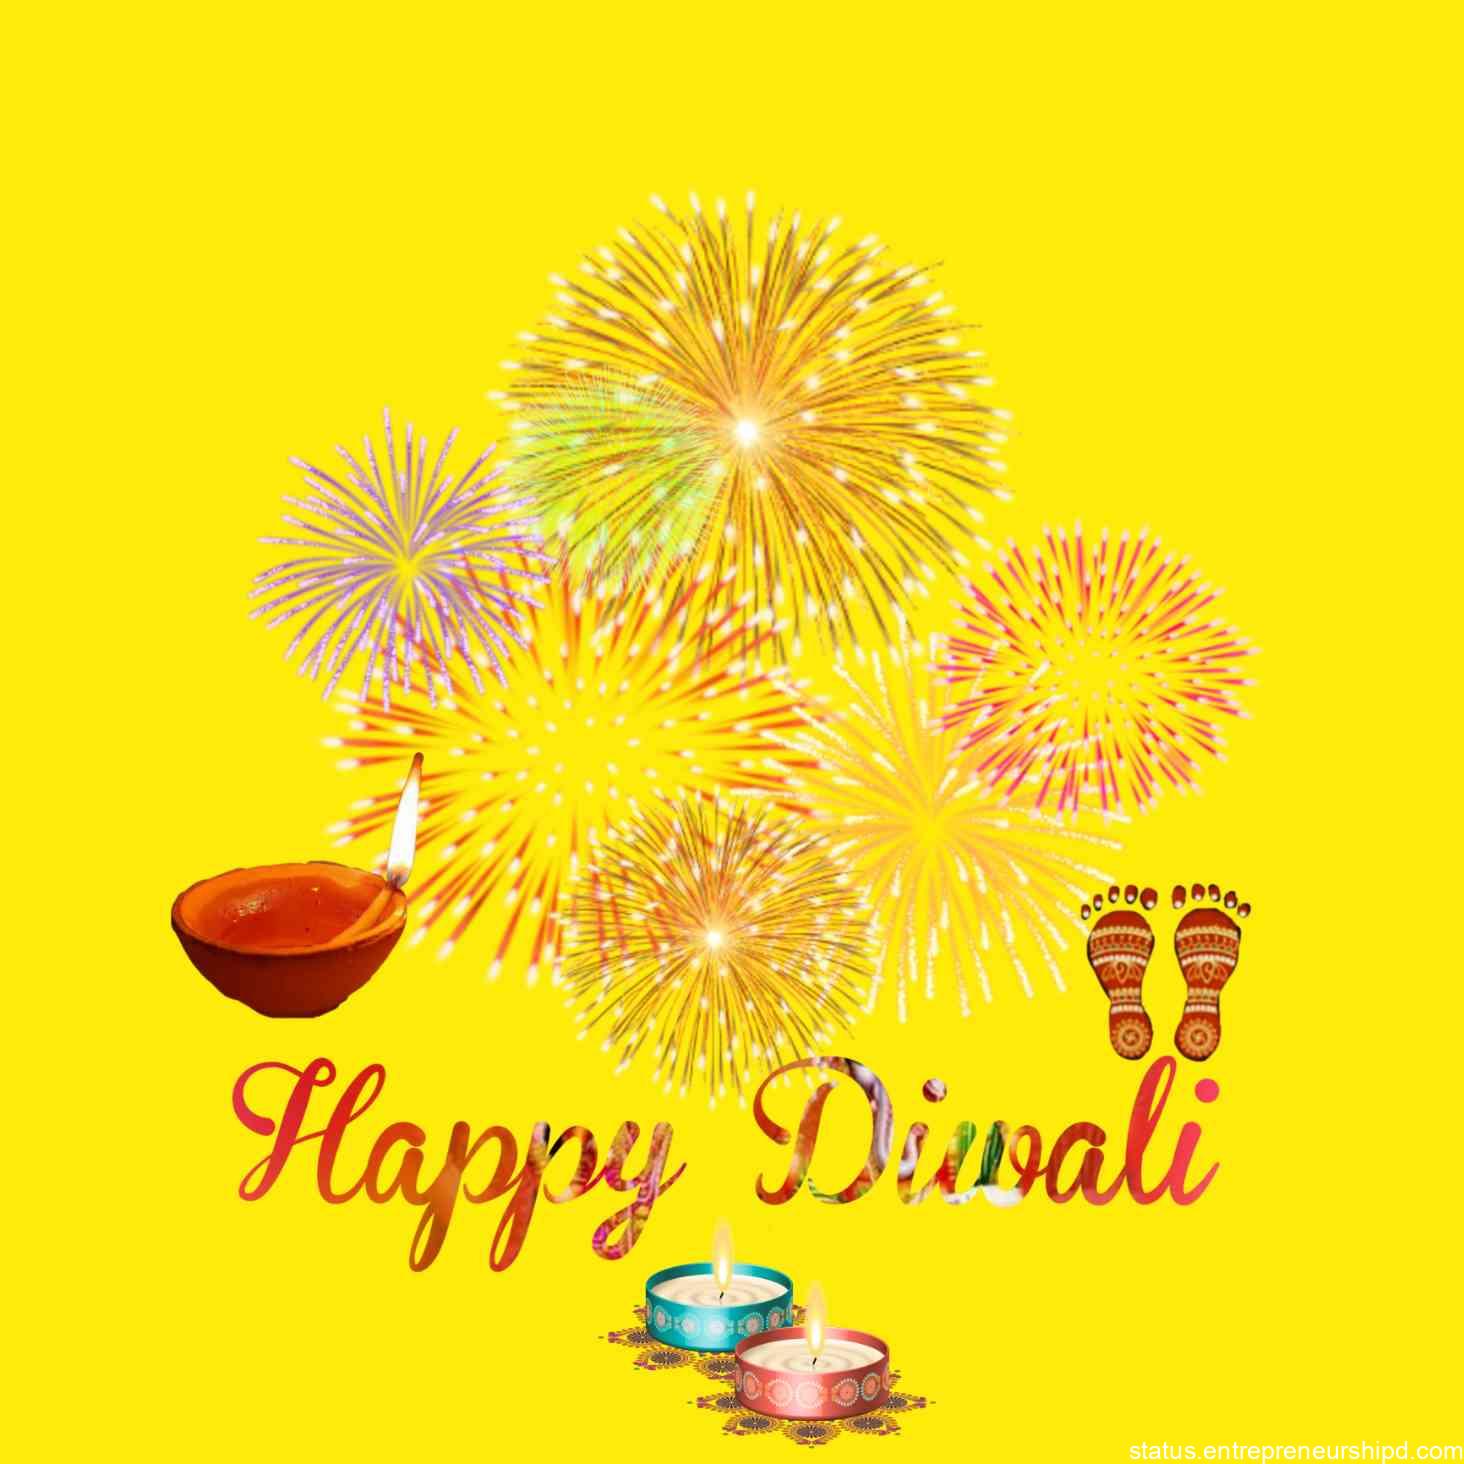 Happy diwali marathi image